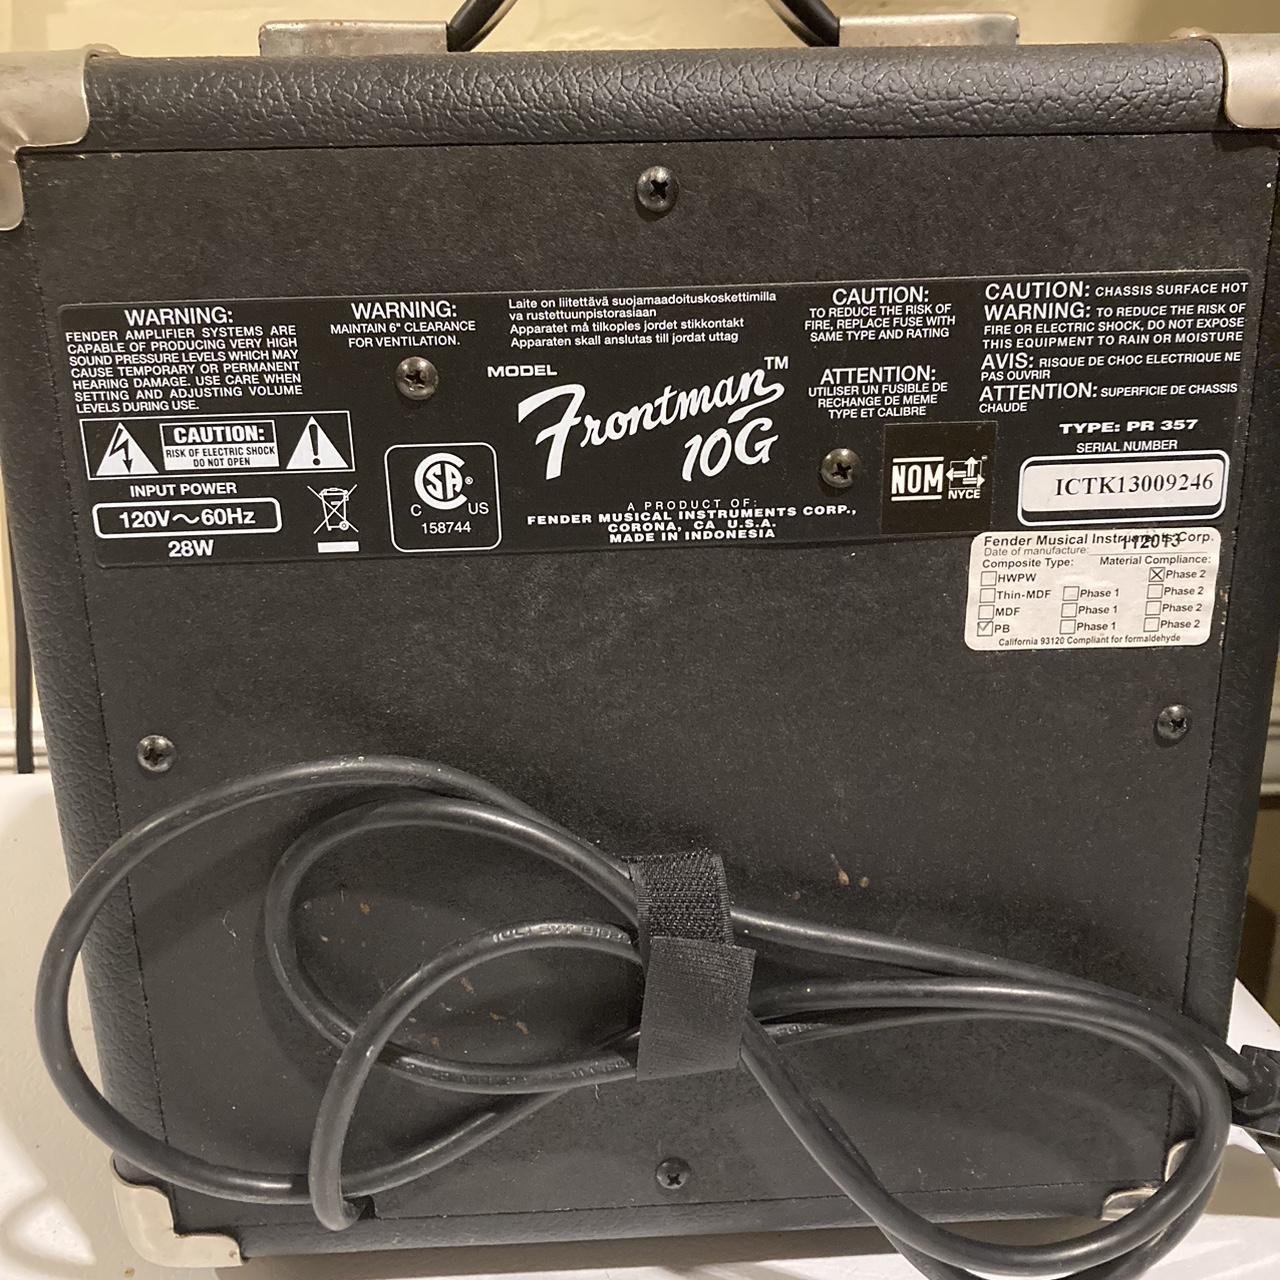 Fender Frontman 10G Electric Guitar Amplifier, Black, Type PR 357